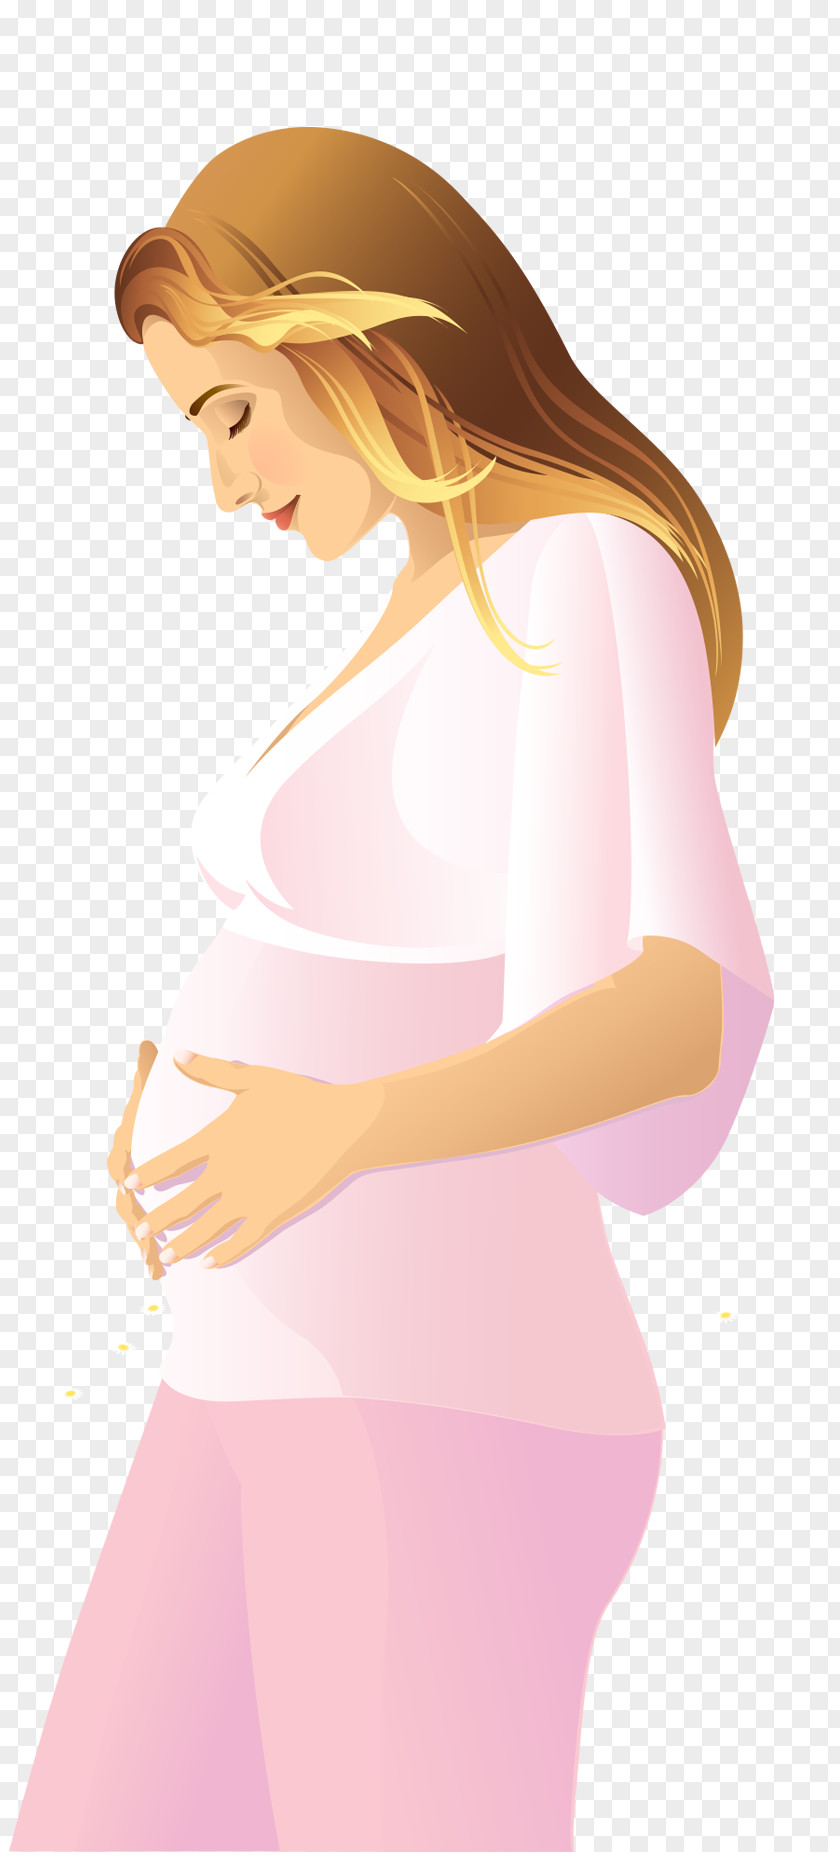 Pregnant Woman Pregnancy PNG